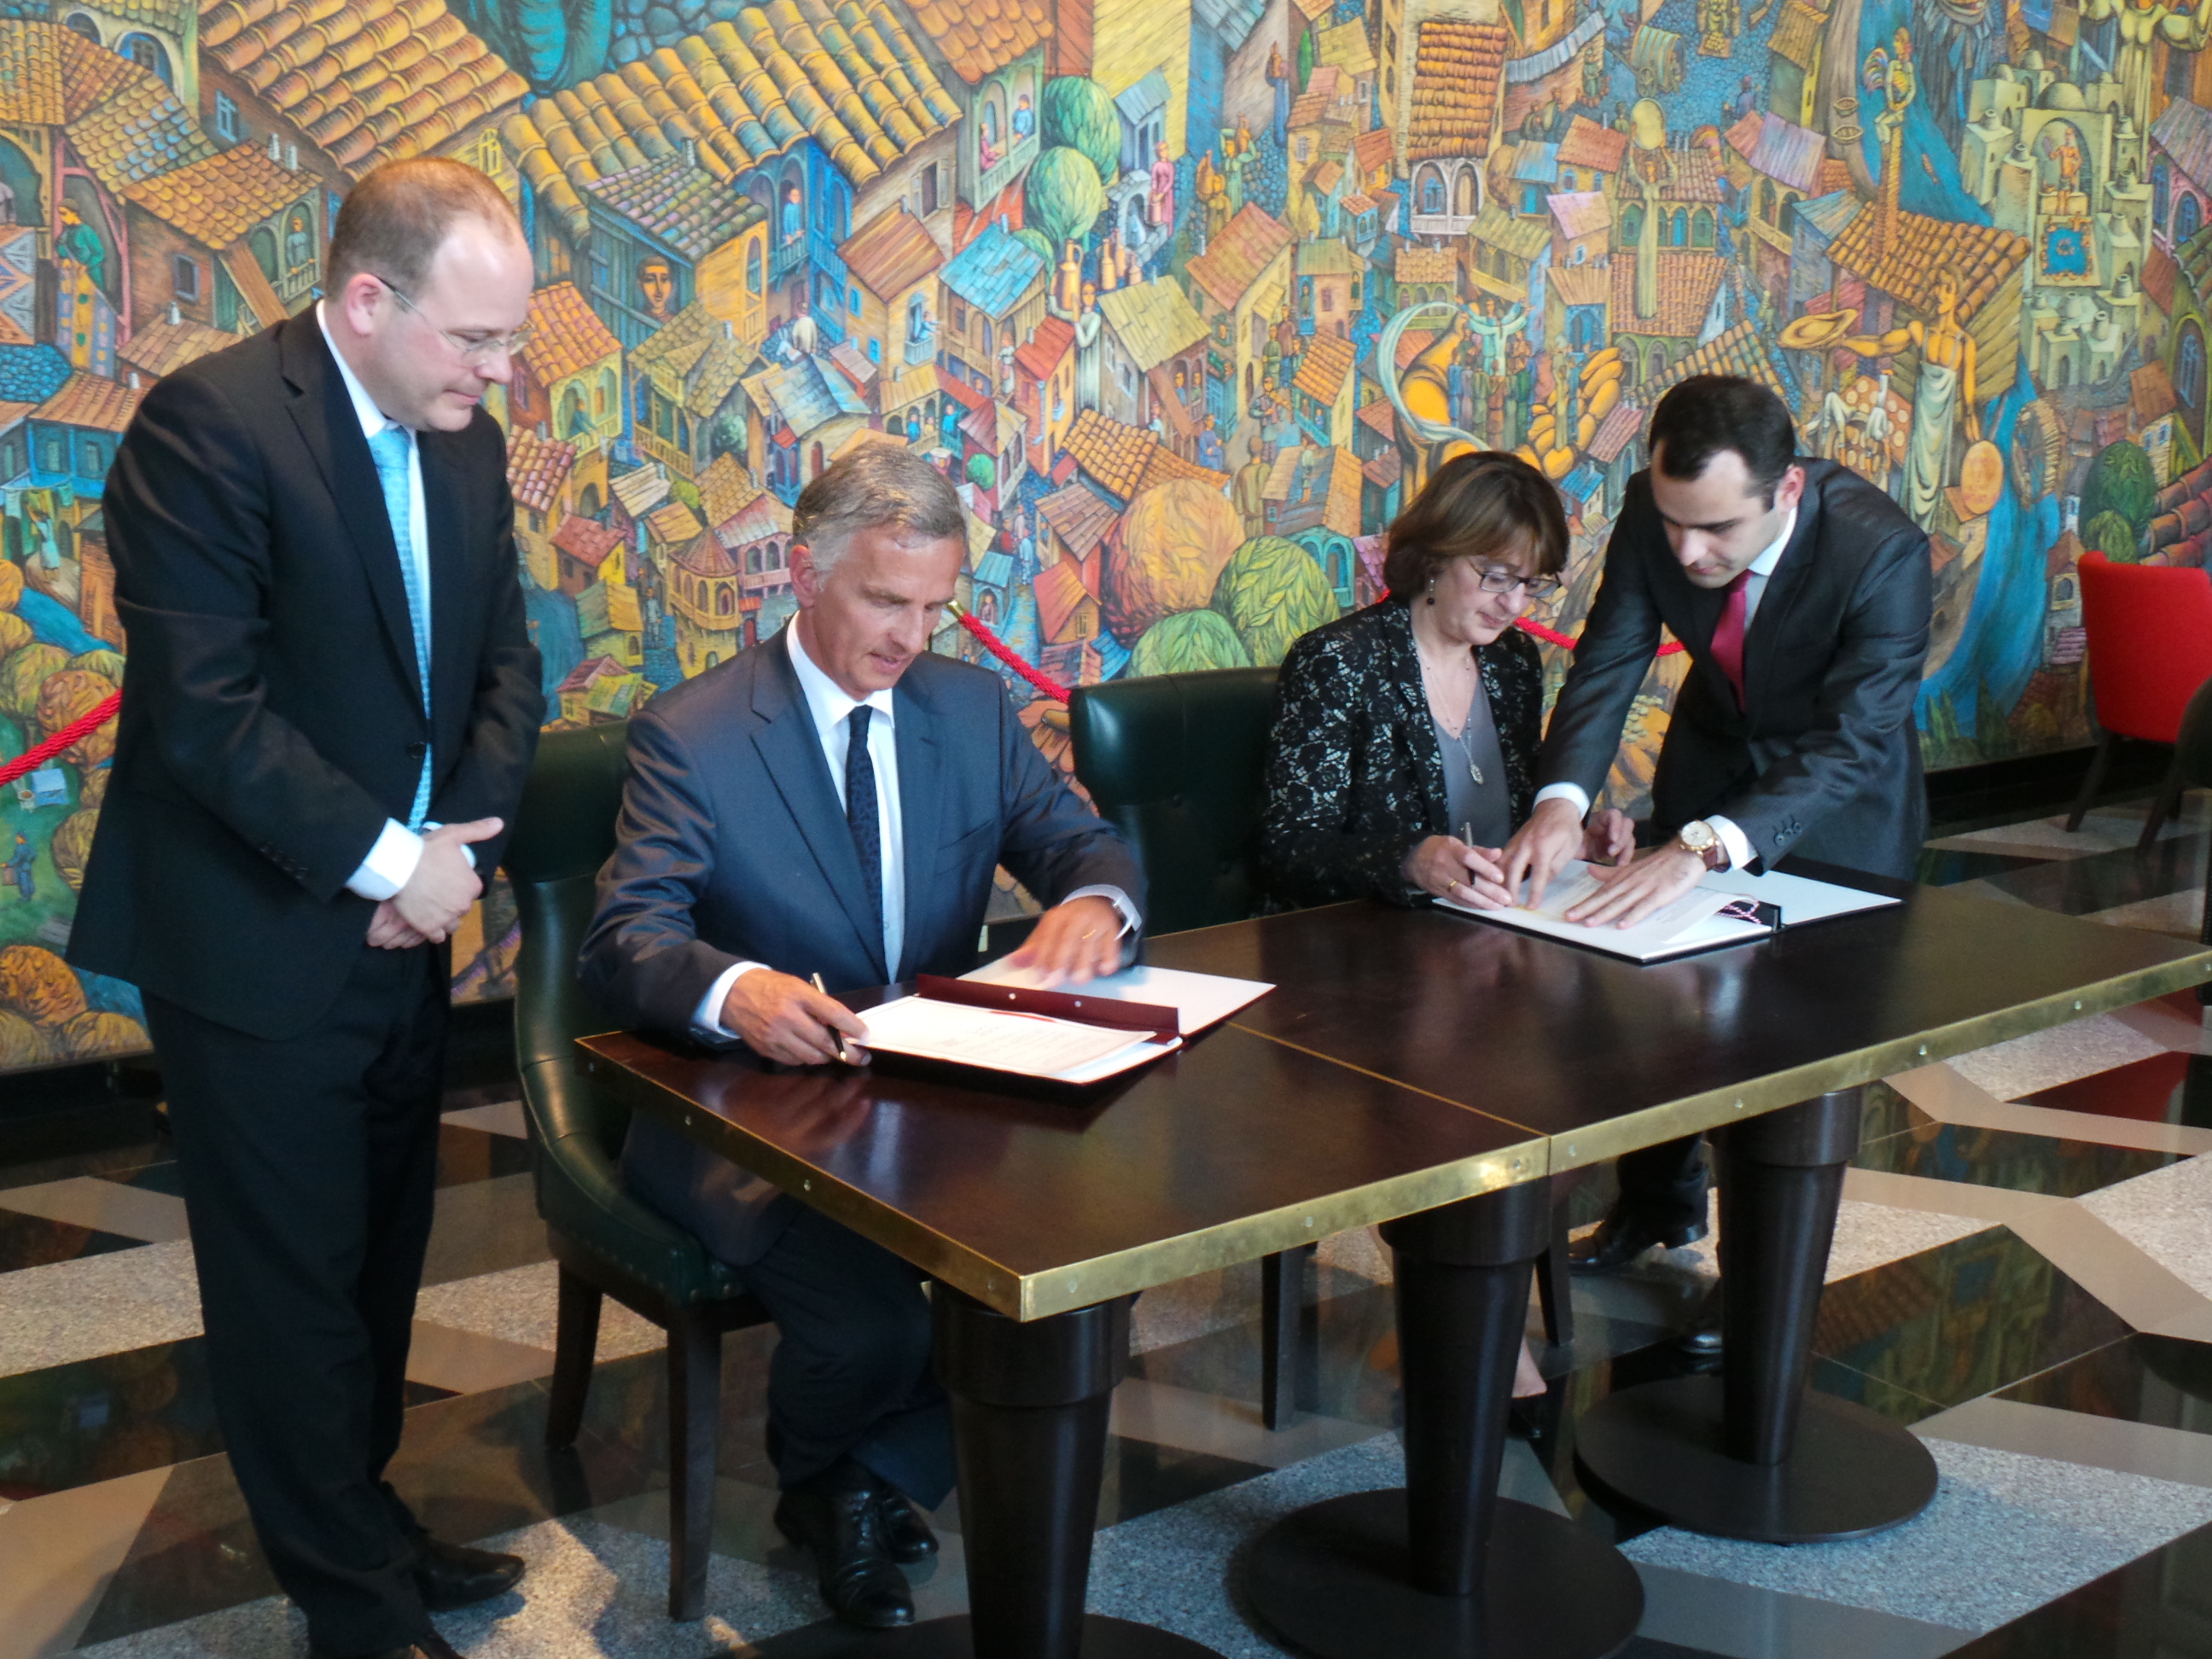 Il presidente della Confederazione Didier Burkhalter e la ministra degli esteri georgiana Maia Panjikidze firmano un accordo (Memorandum of Understanding) relativo alla cooperazione tra i ministeri degli esteri della Svizzera e della Georgia.